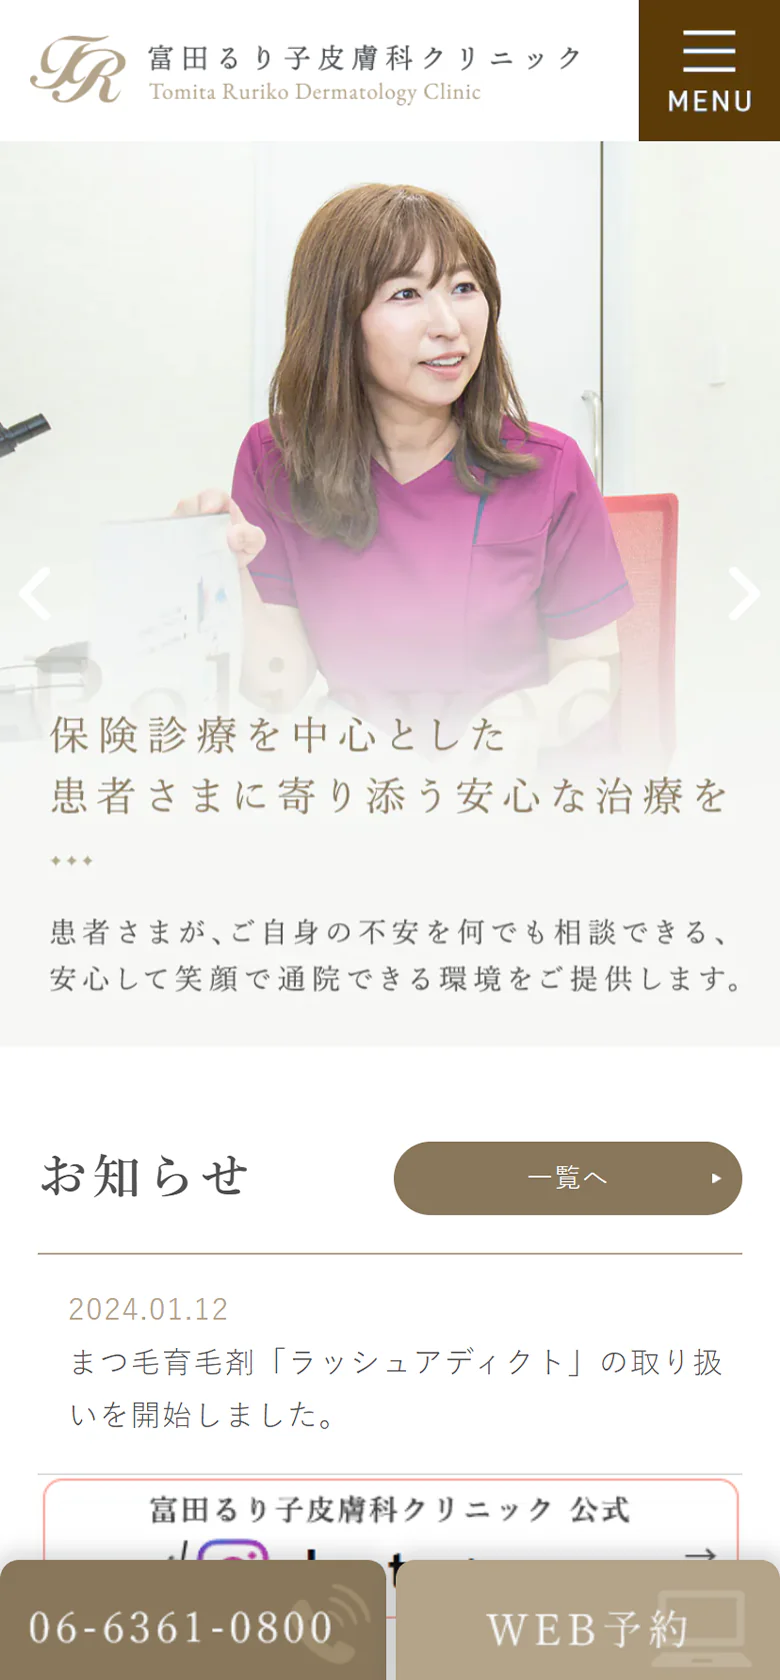 富田るり子皮膚科クリニックスマホサイトイメージ